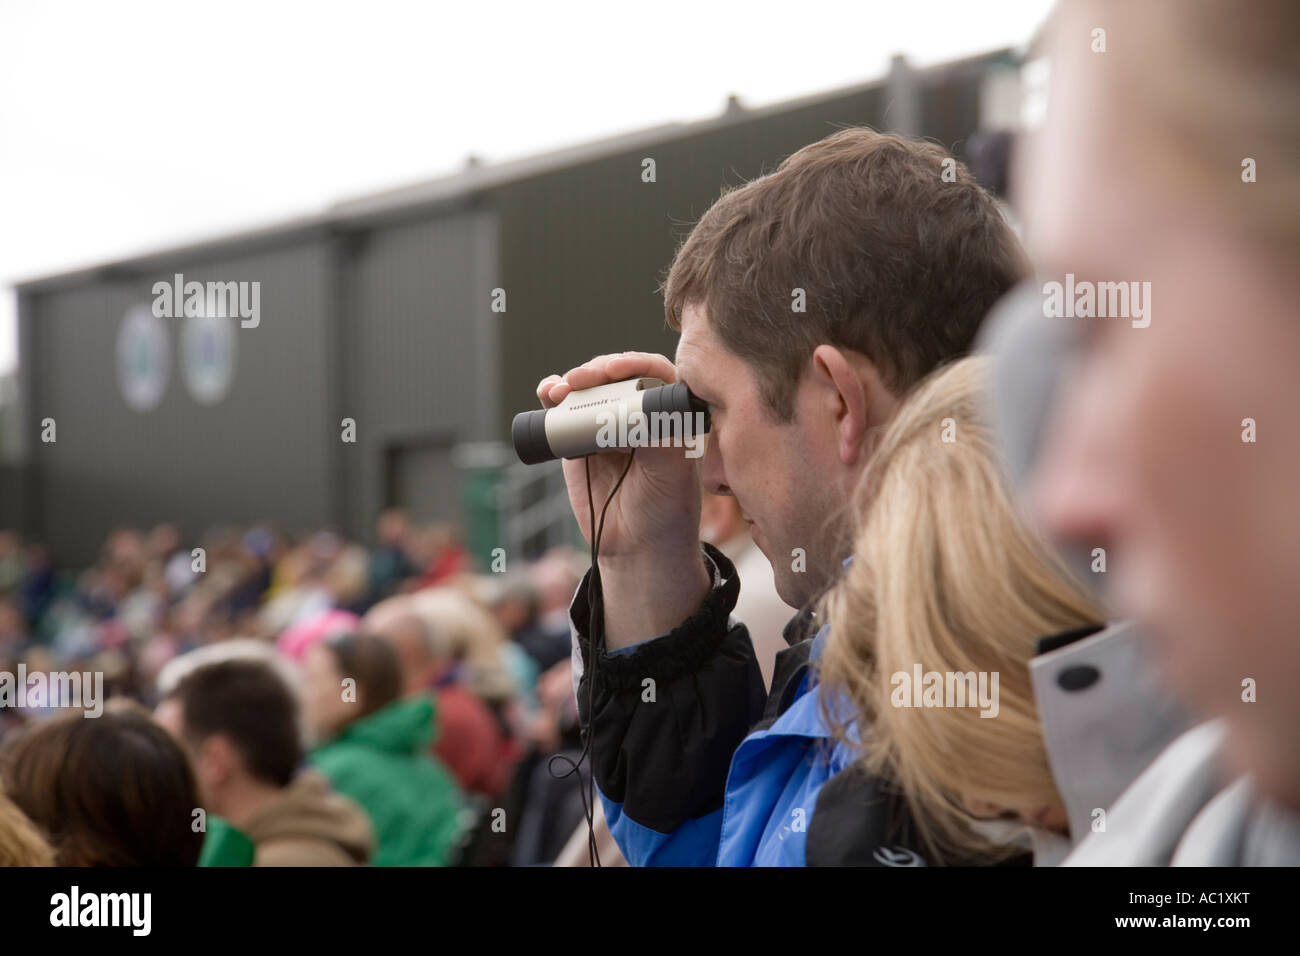 Relojes del ventilador a través de binoculares durante el juego en el centro de la cancha en el Campeonato de tenis de Wimbledon UK Foto de stock